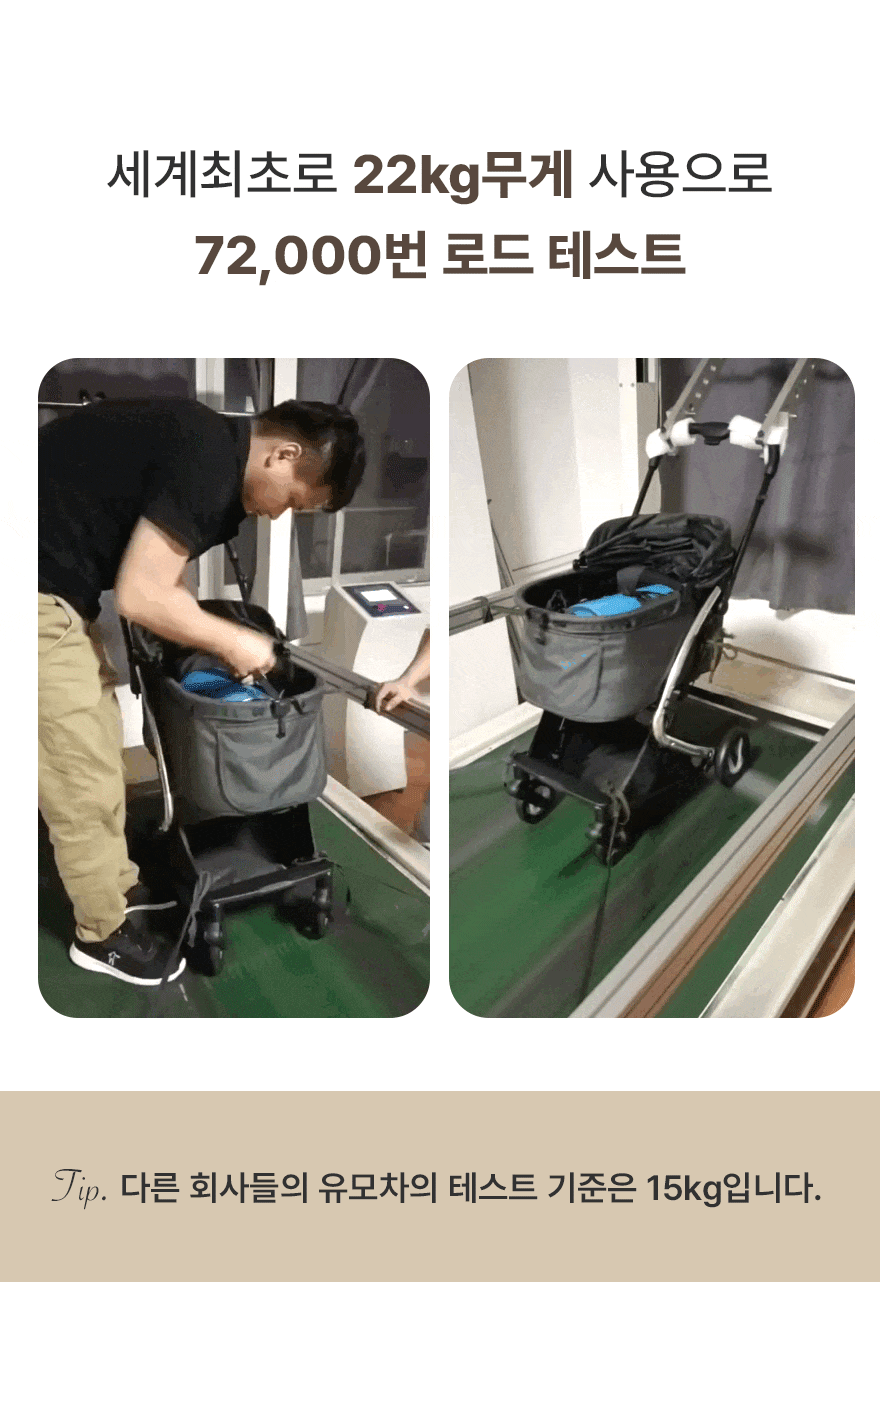 Avalon 韓國寵物手推車西裝灰色 Stroller Grey